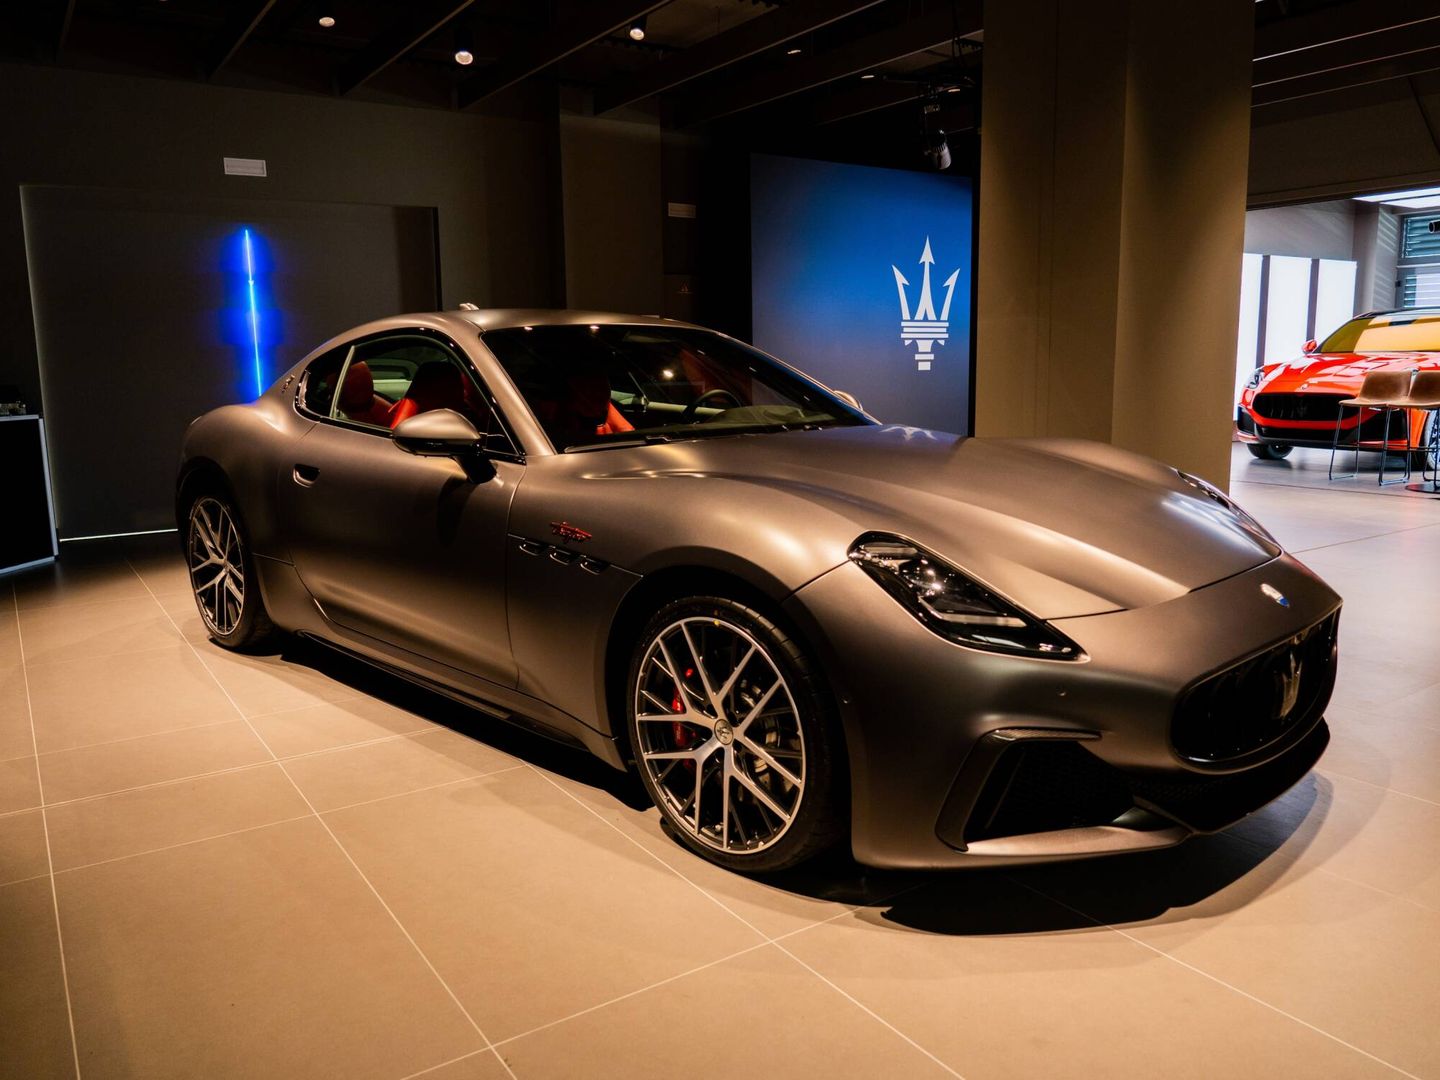 El nuevo GranTurismo es el último modelo lanzado por Maserati, y tiene versión eléctrica.